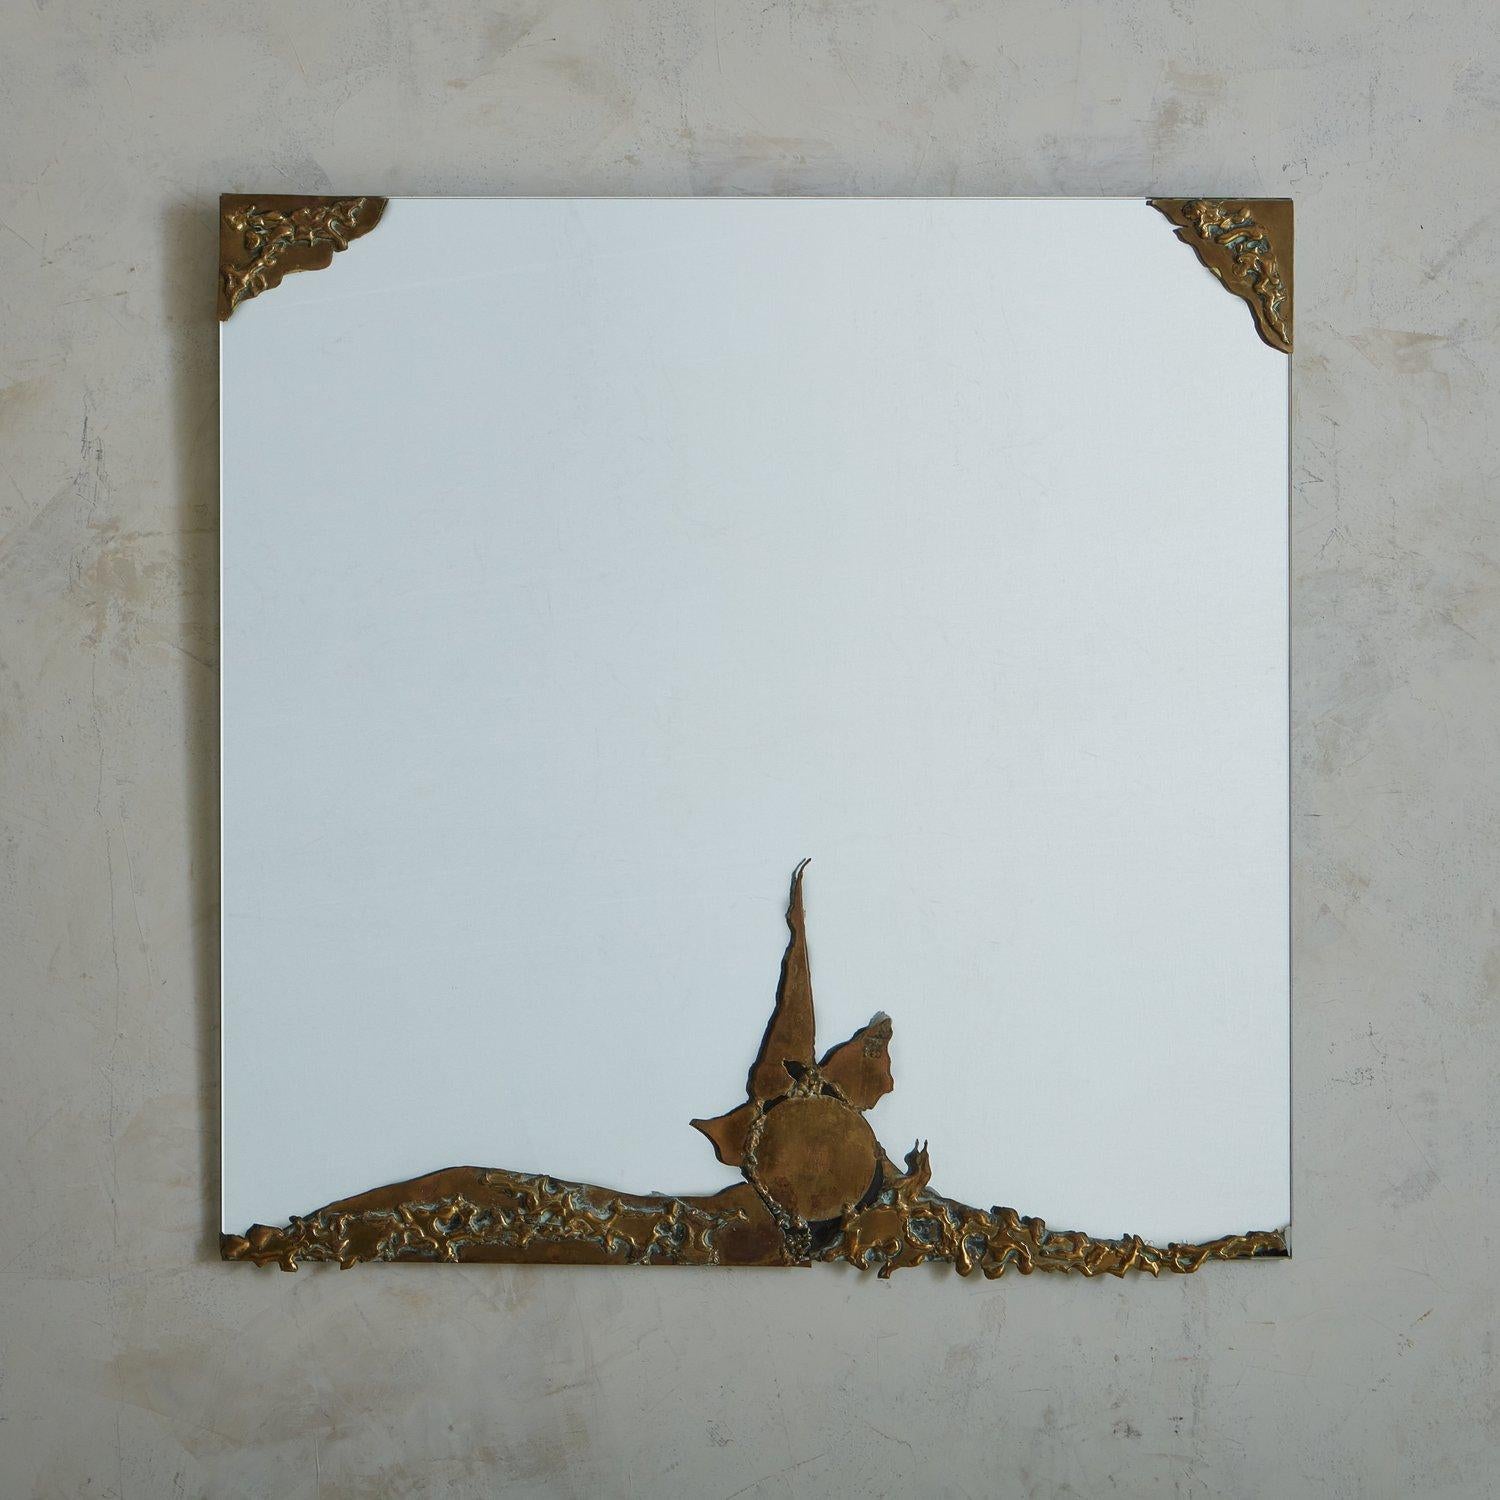 Ein französischer Jugendstil-Wandspiegel aus den 1970er Jahren mit einem teilweise strukturierten Bronzerahmen mit wunderschöner Patina. Die Bronzedetails umrahmen die oberen Ecken und ziehen sich kunstvoll an der Unterseite des Spiegels entlang.